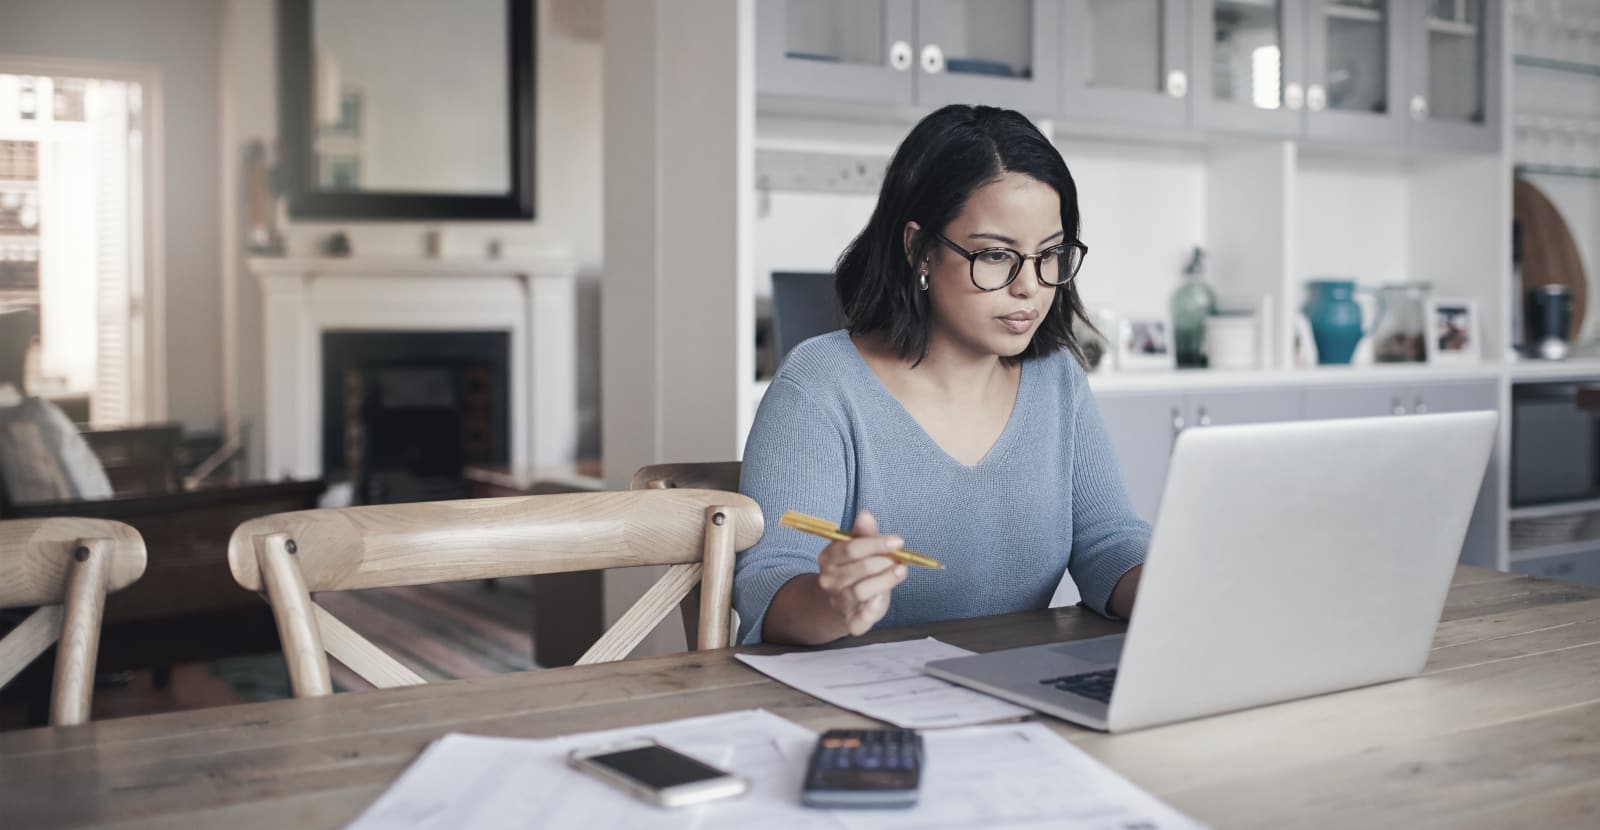 Una donna siede a un tavolo di fronte a un laptop, mentre accanto ha il cellulare, una calcolatrice e dei documenti